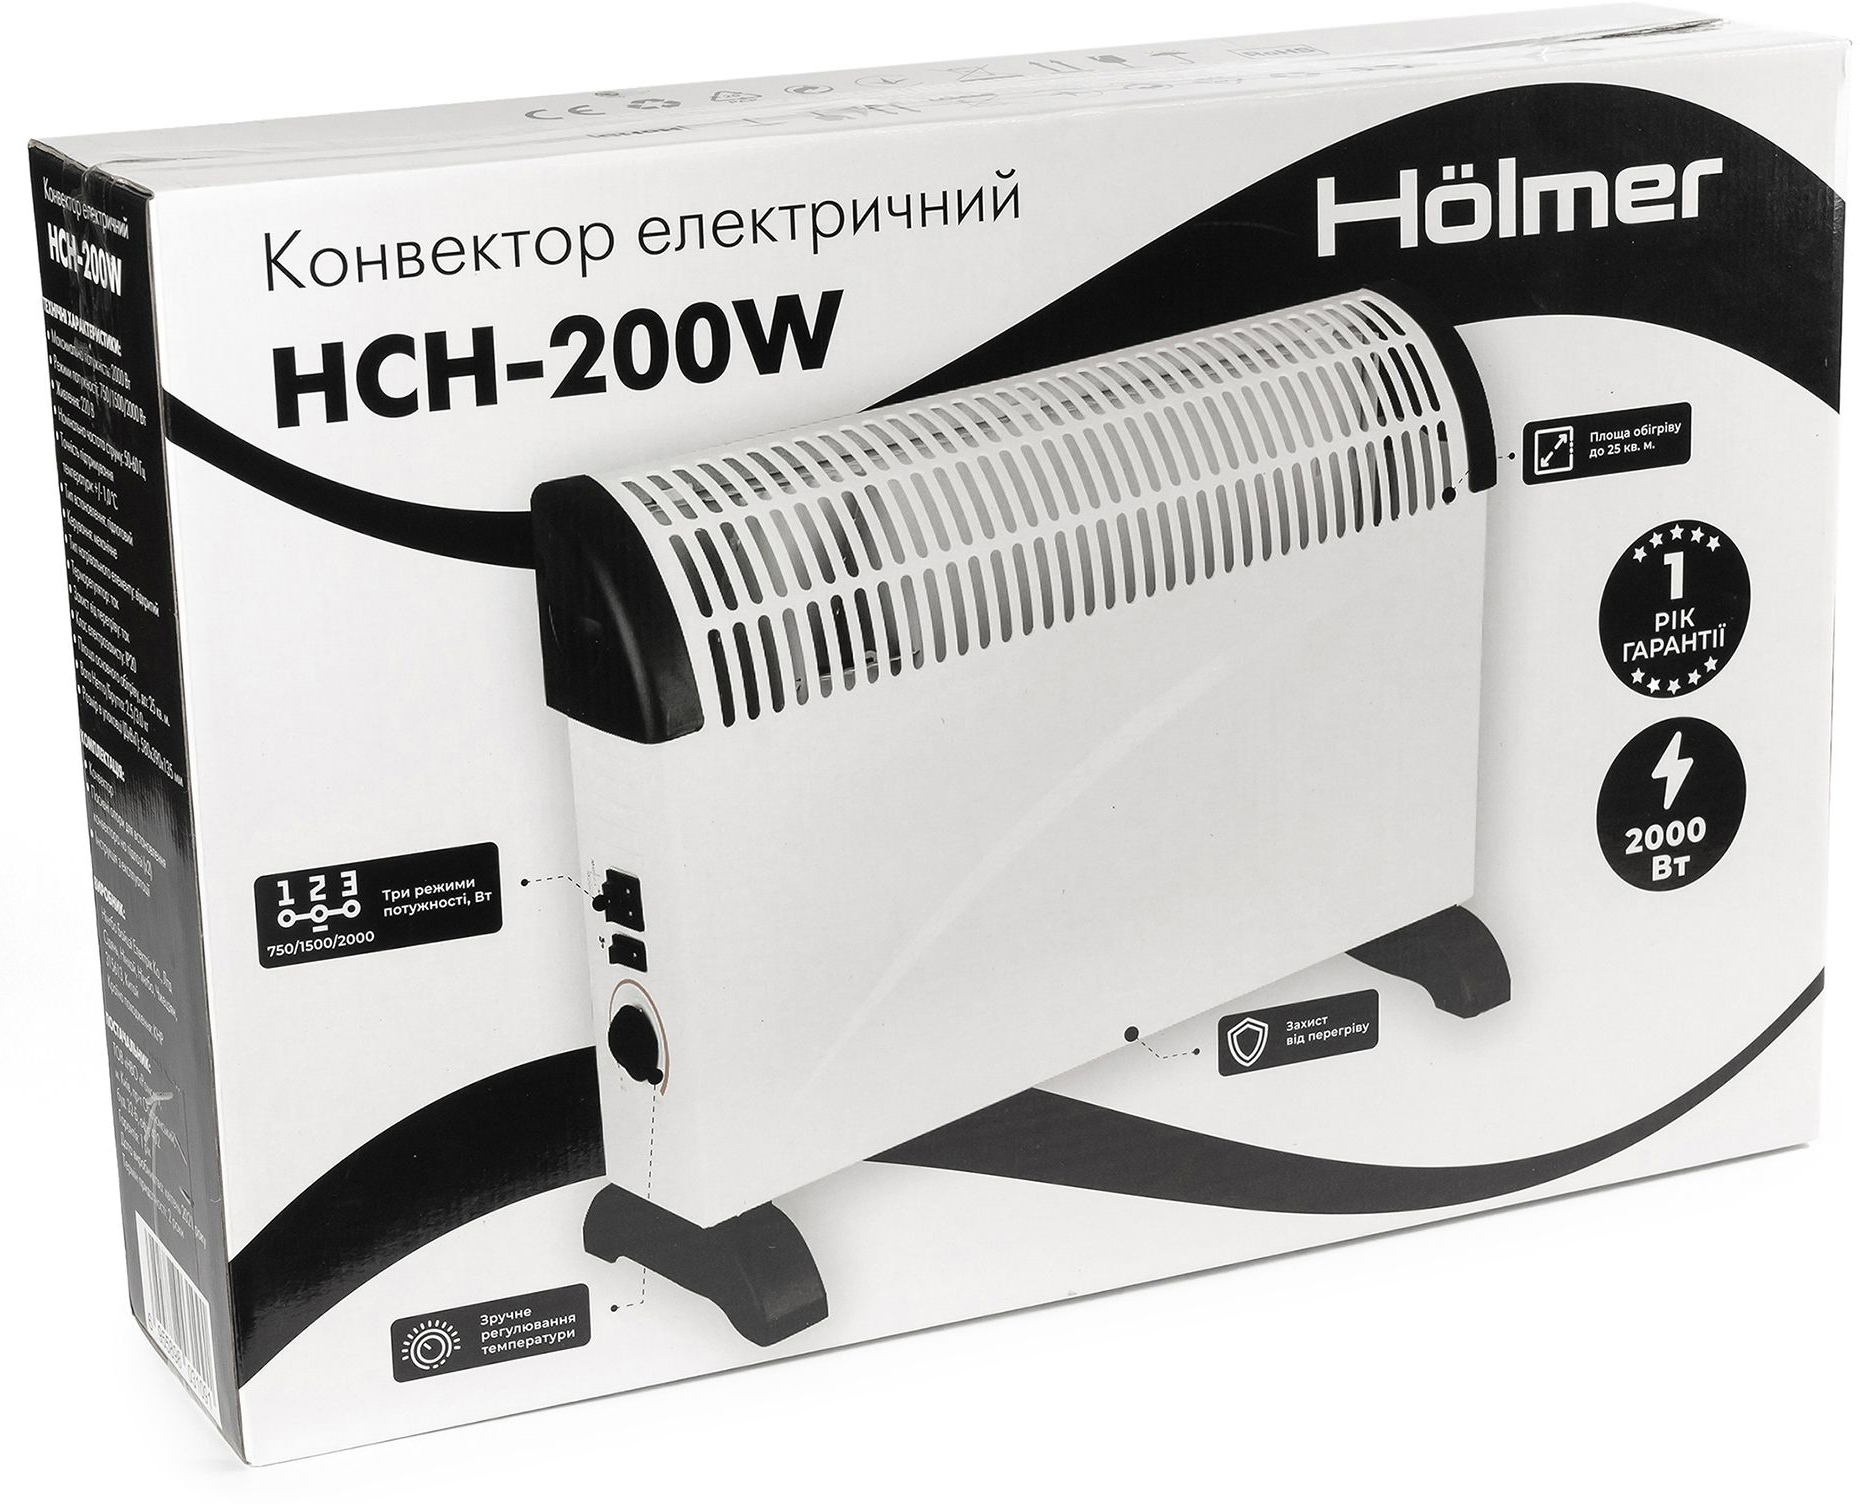 Електричний конвектор Holmer HCH-200W  інструкція - зображення 6